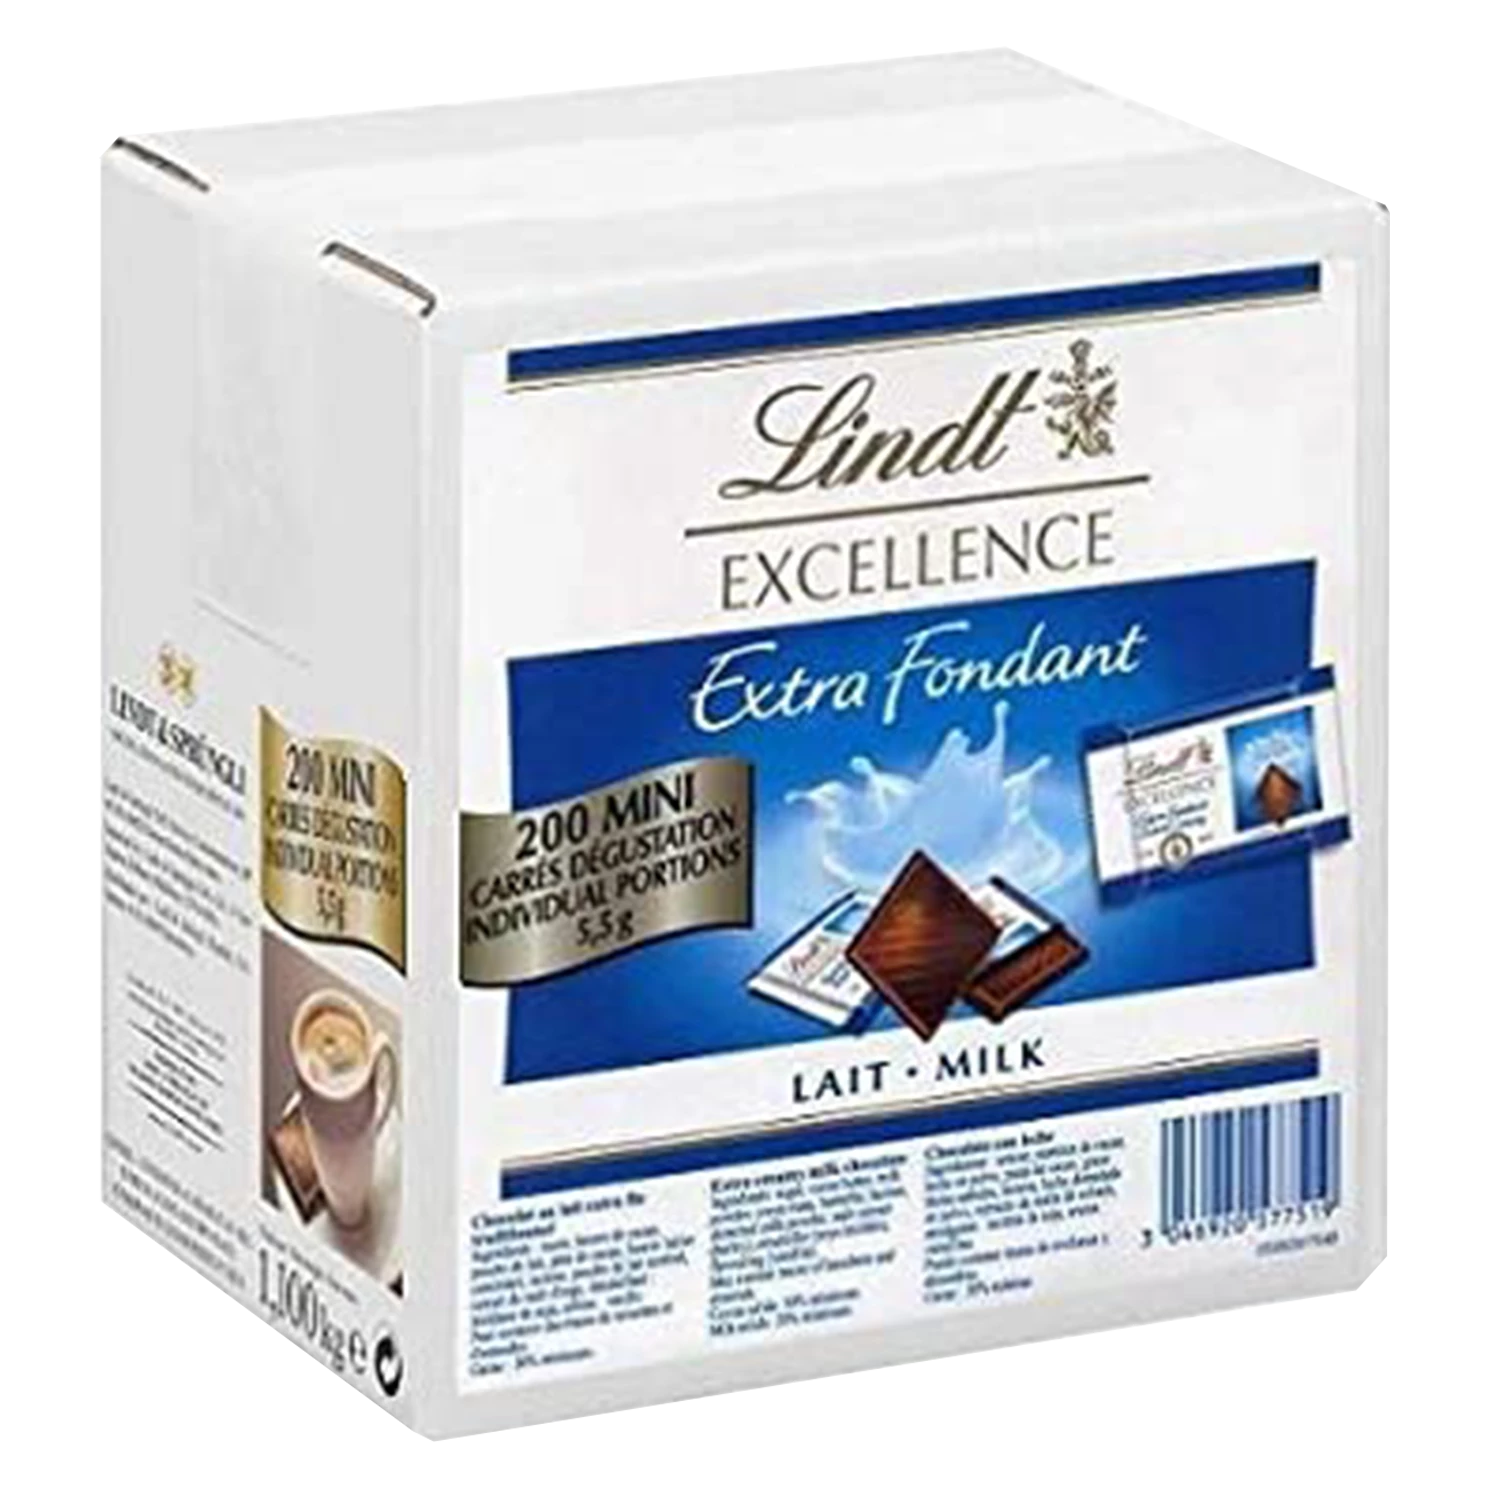 Chocolat Mini Excellence Lait Extra Fondant X200 - LINDT